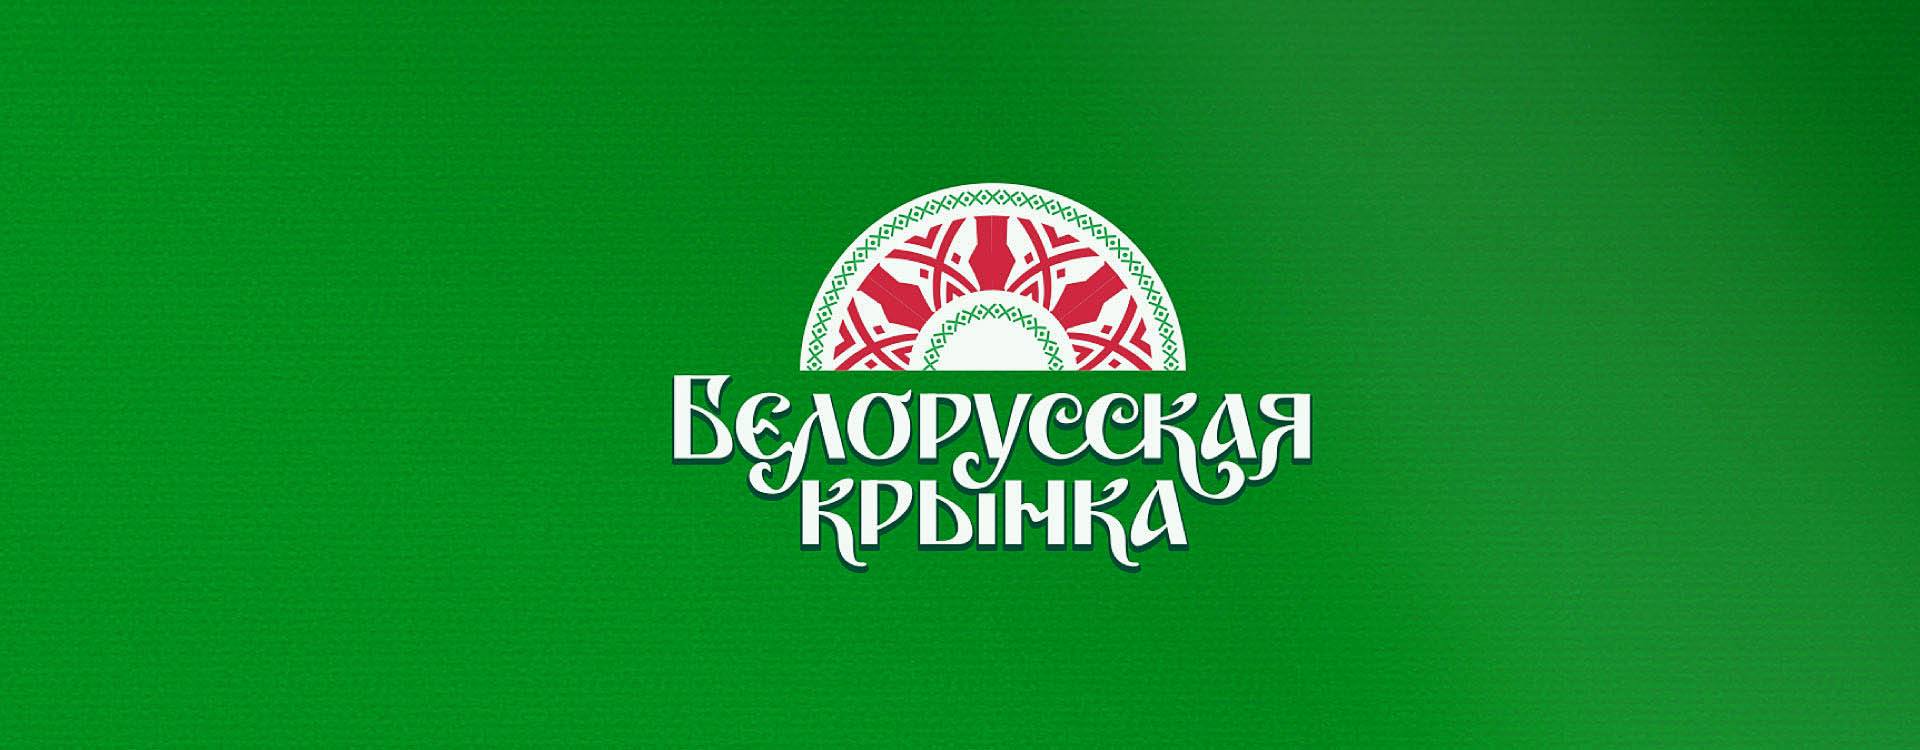 Логотип белорусского сливочного масла с использованием традиционной стилистики